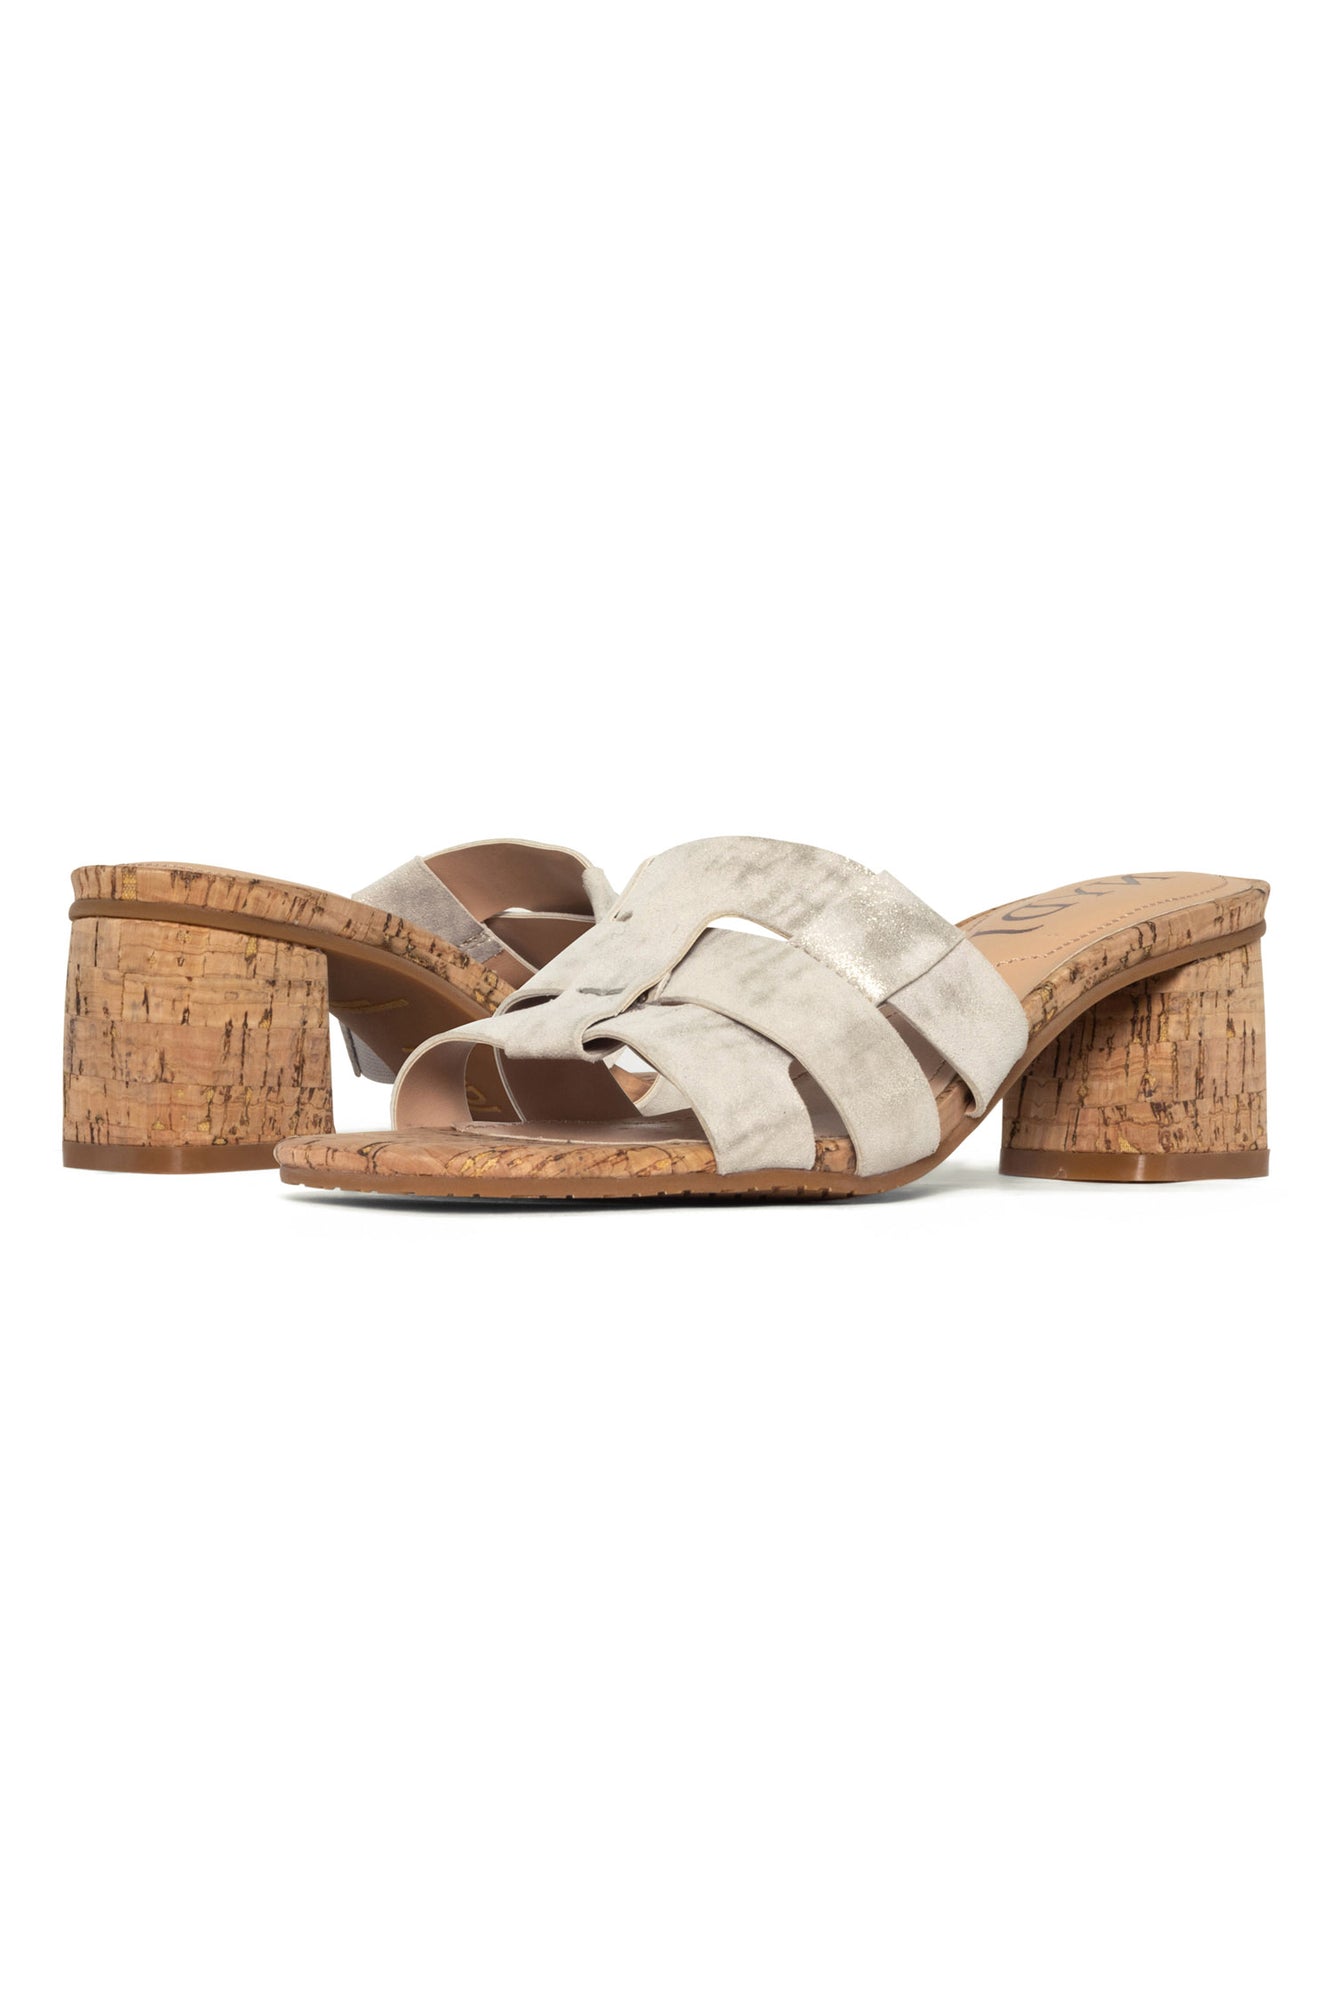 NYDJ Gloriana Mule Sandals In Metallic Suede - Pewter